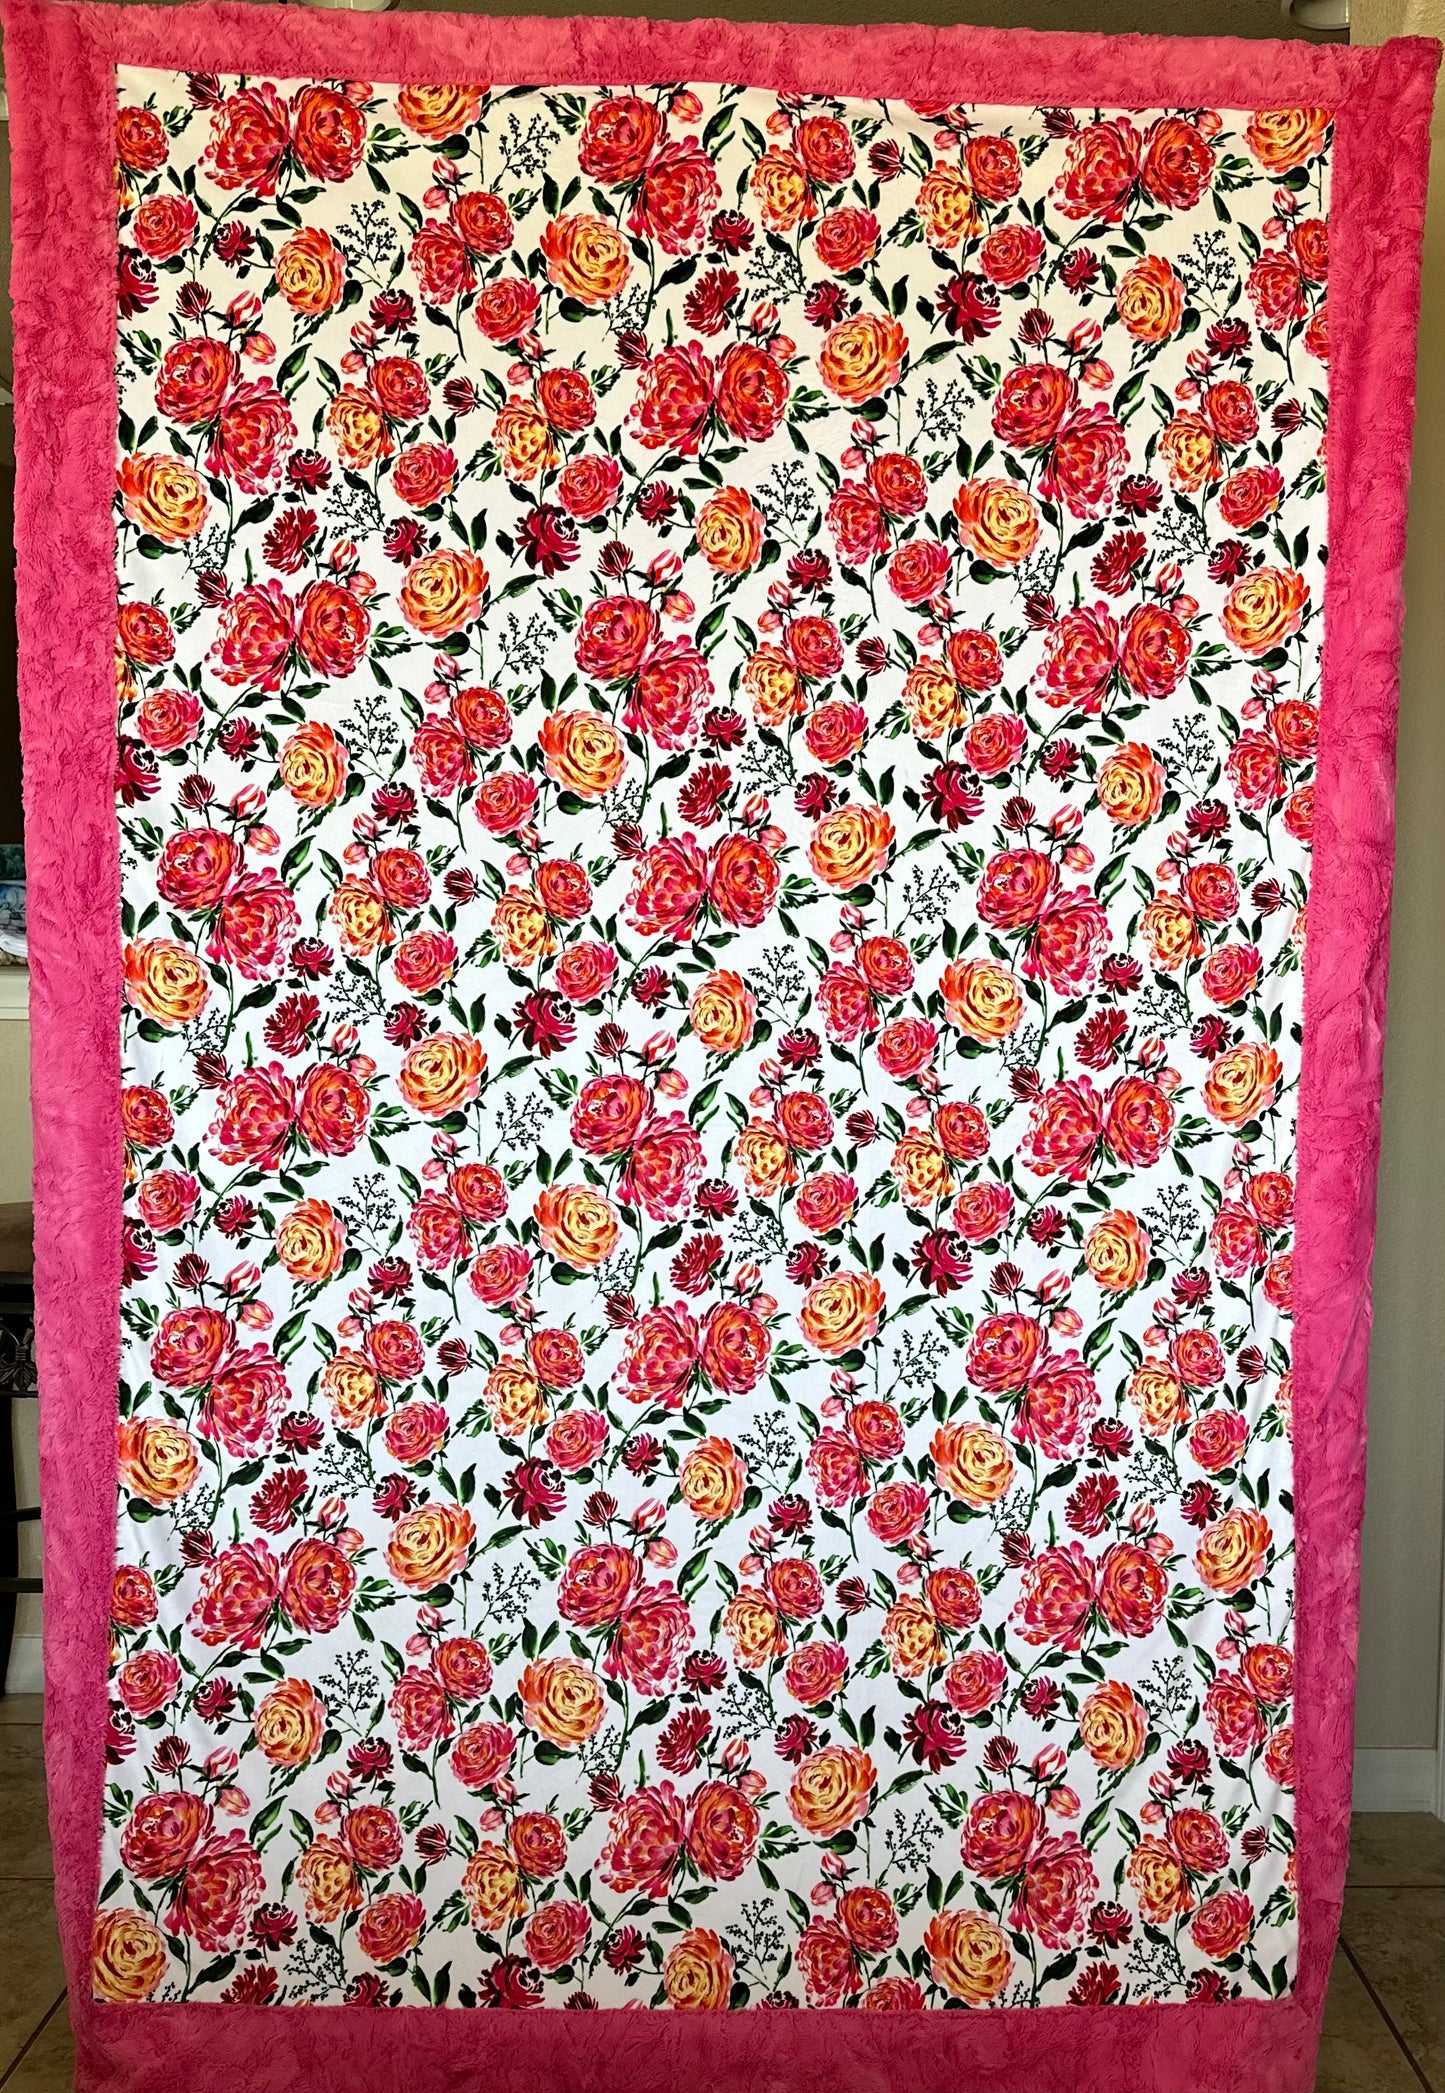 Floral Shop Bloom on Carnation Hide Large Adult Blanket - Elegant Florals - 53x80